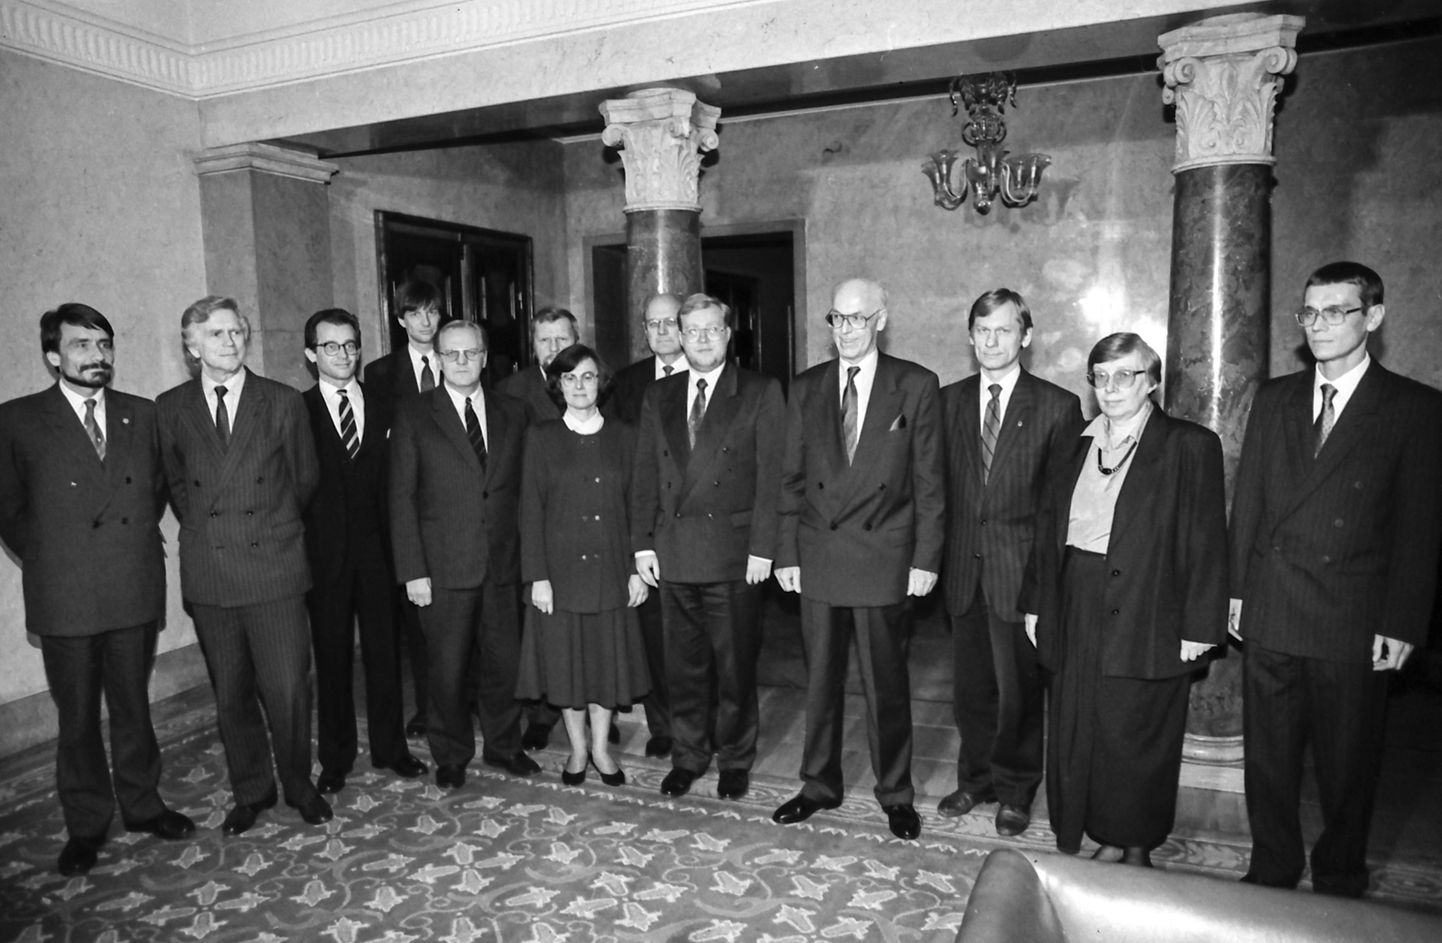 25 aastat tagasi astus ametisse taasiseseisvunud Eesti esimene põhiseaduslik valitsus, mida hakkas juhtima 32-aastane ajaloolasest poliitik Mart Laar.